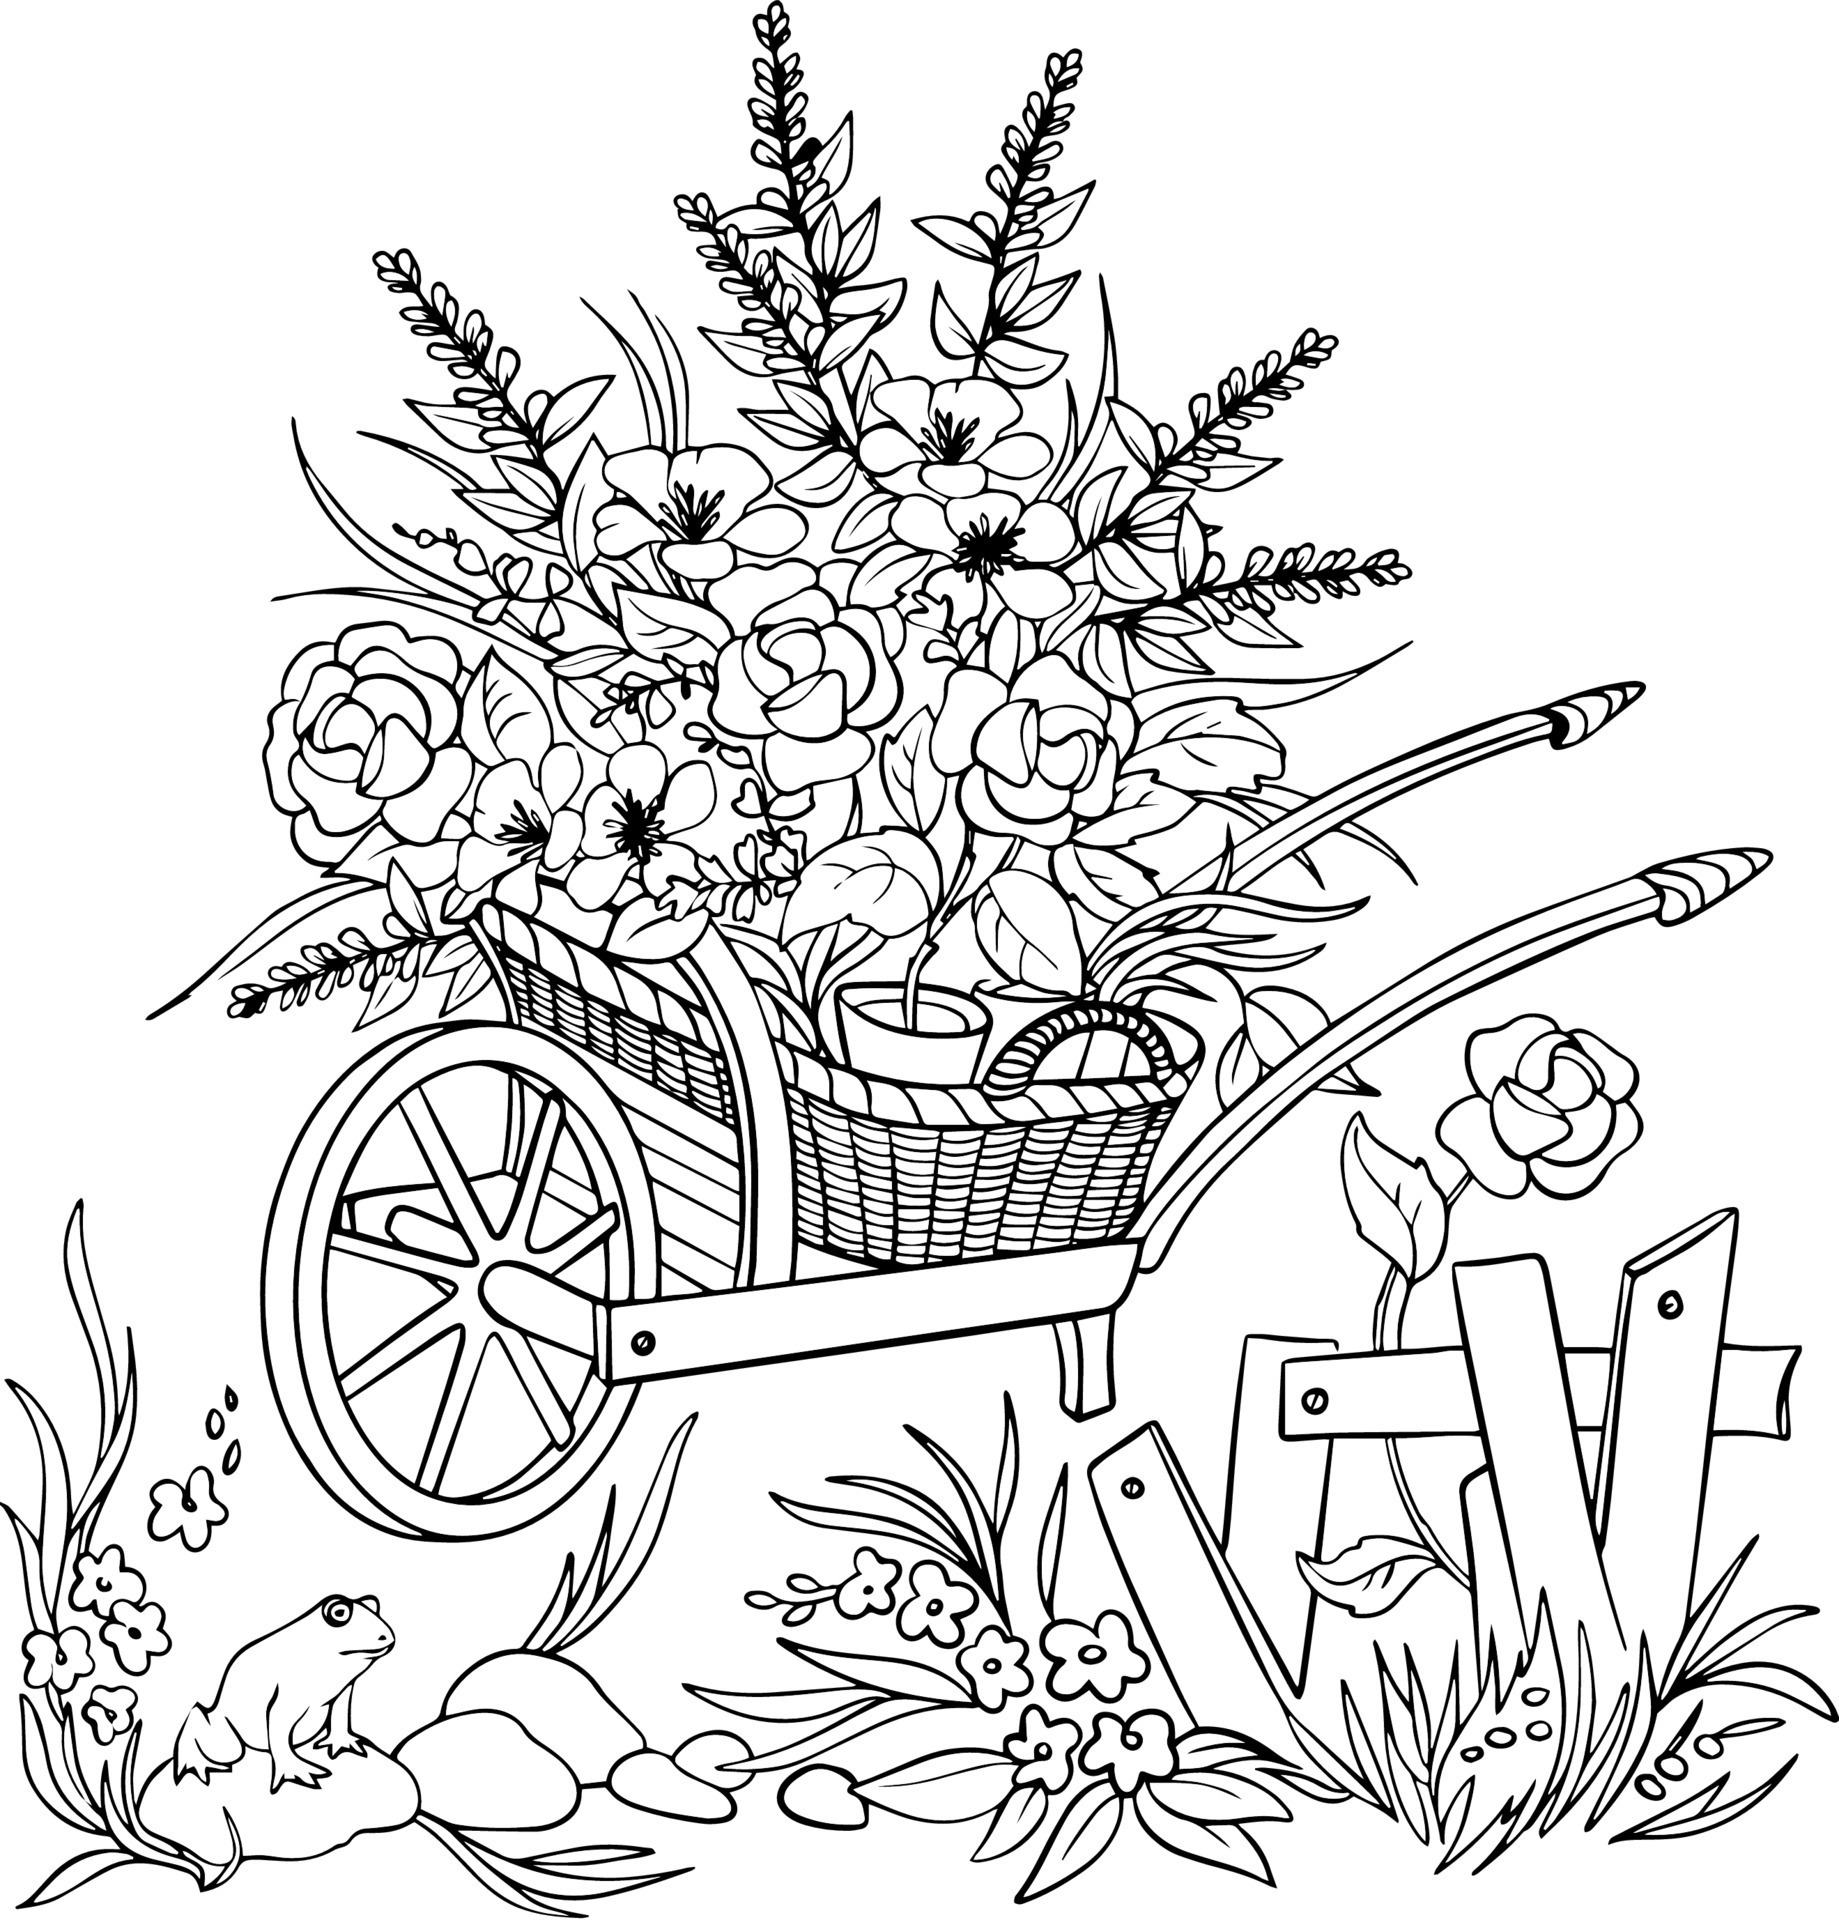 Livro Para Colorir Da Grama E Dos Desenhos Animados Das Flores Para  Crianças Ilustração do Vetor - Ilustração de jardim, desenho: 54050405